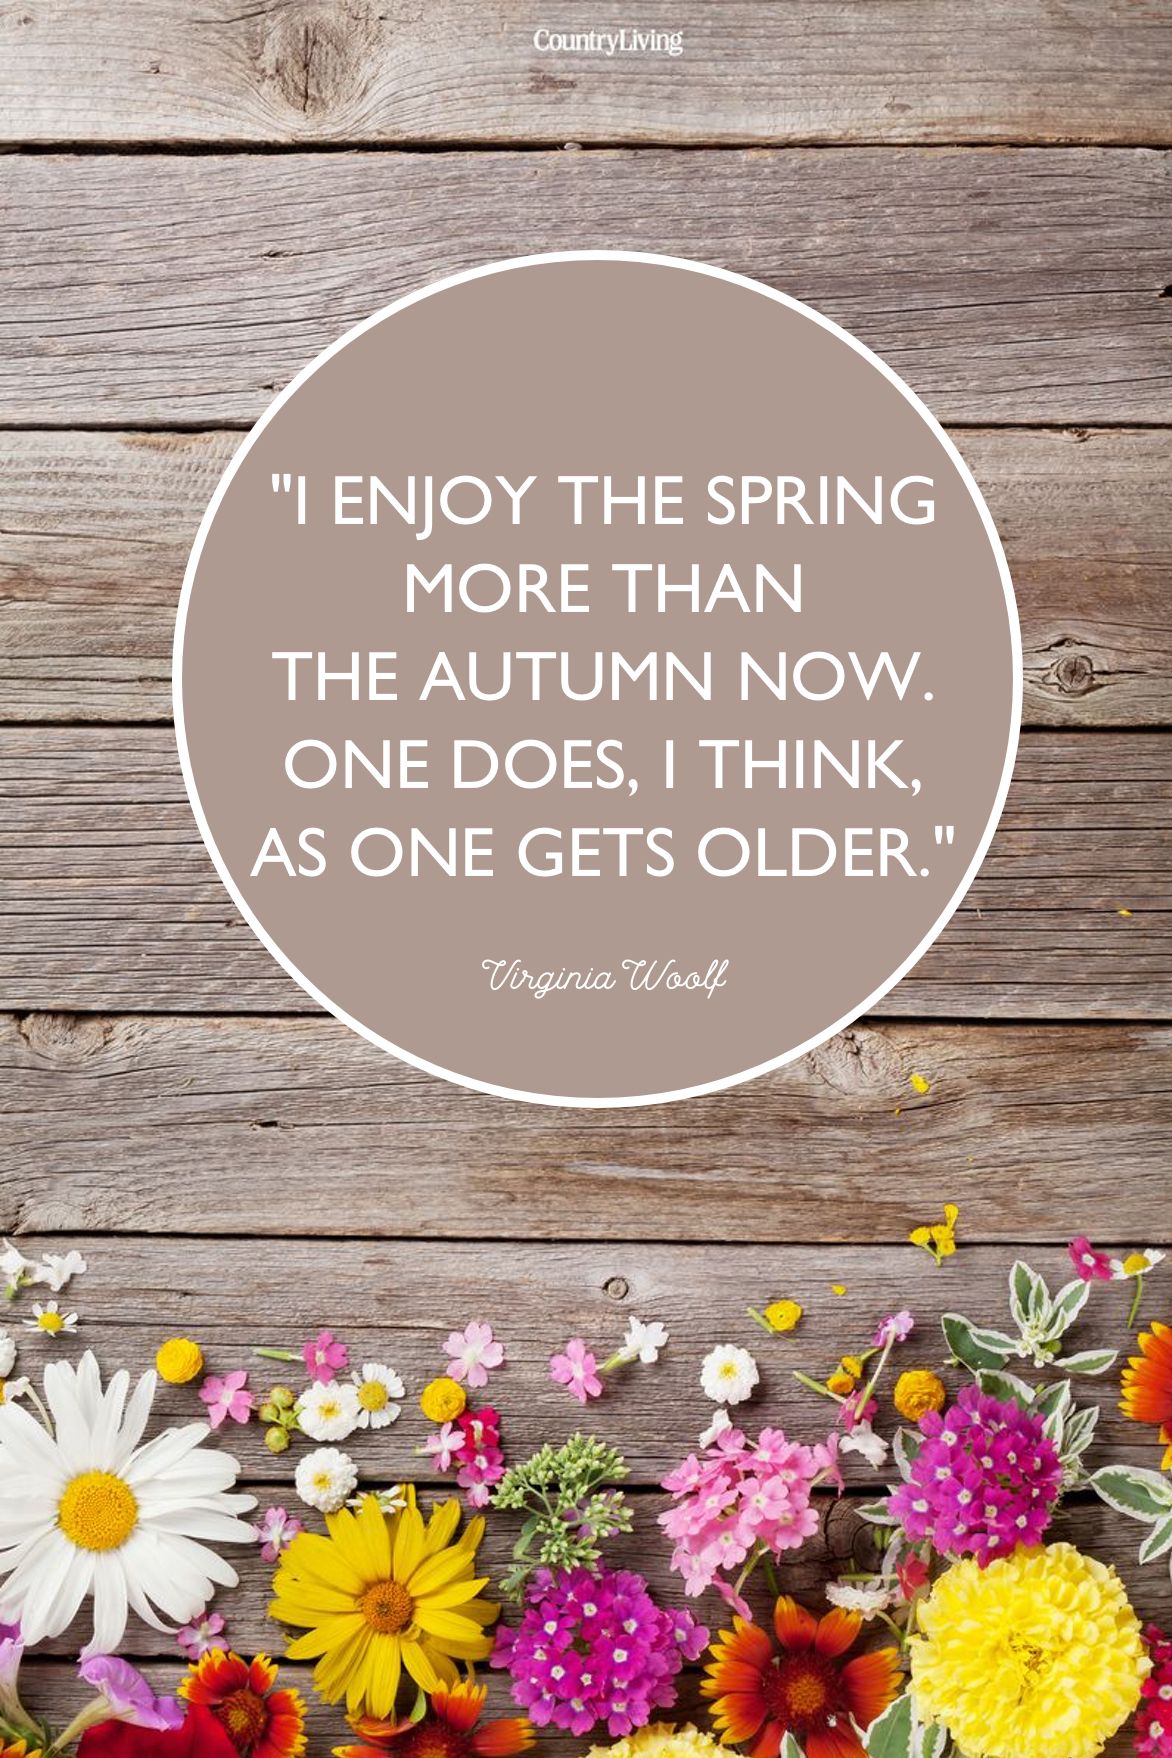 Springtime quotes inspirational